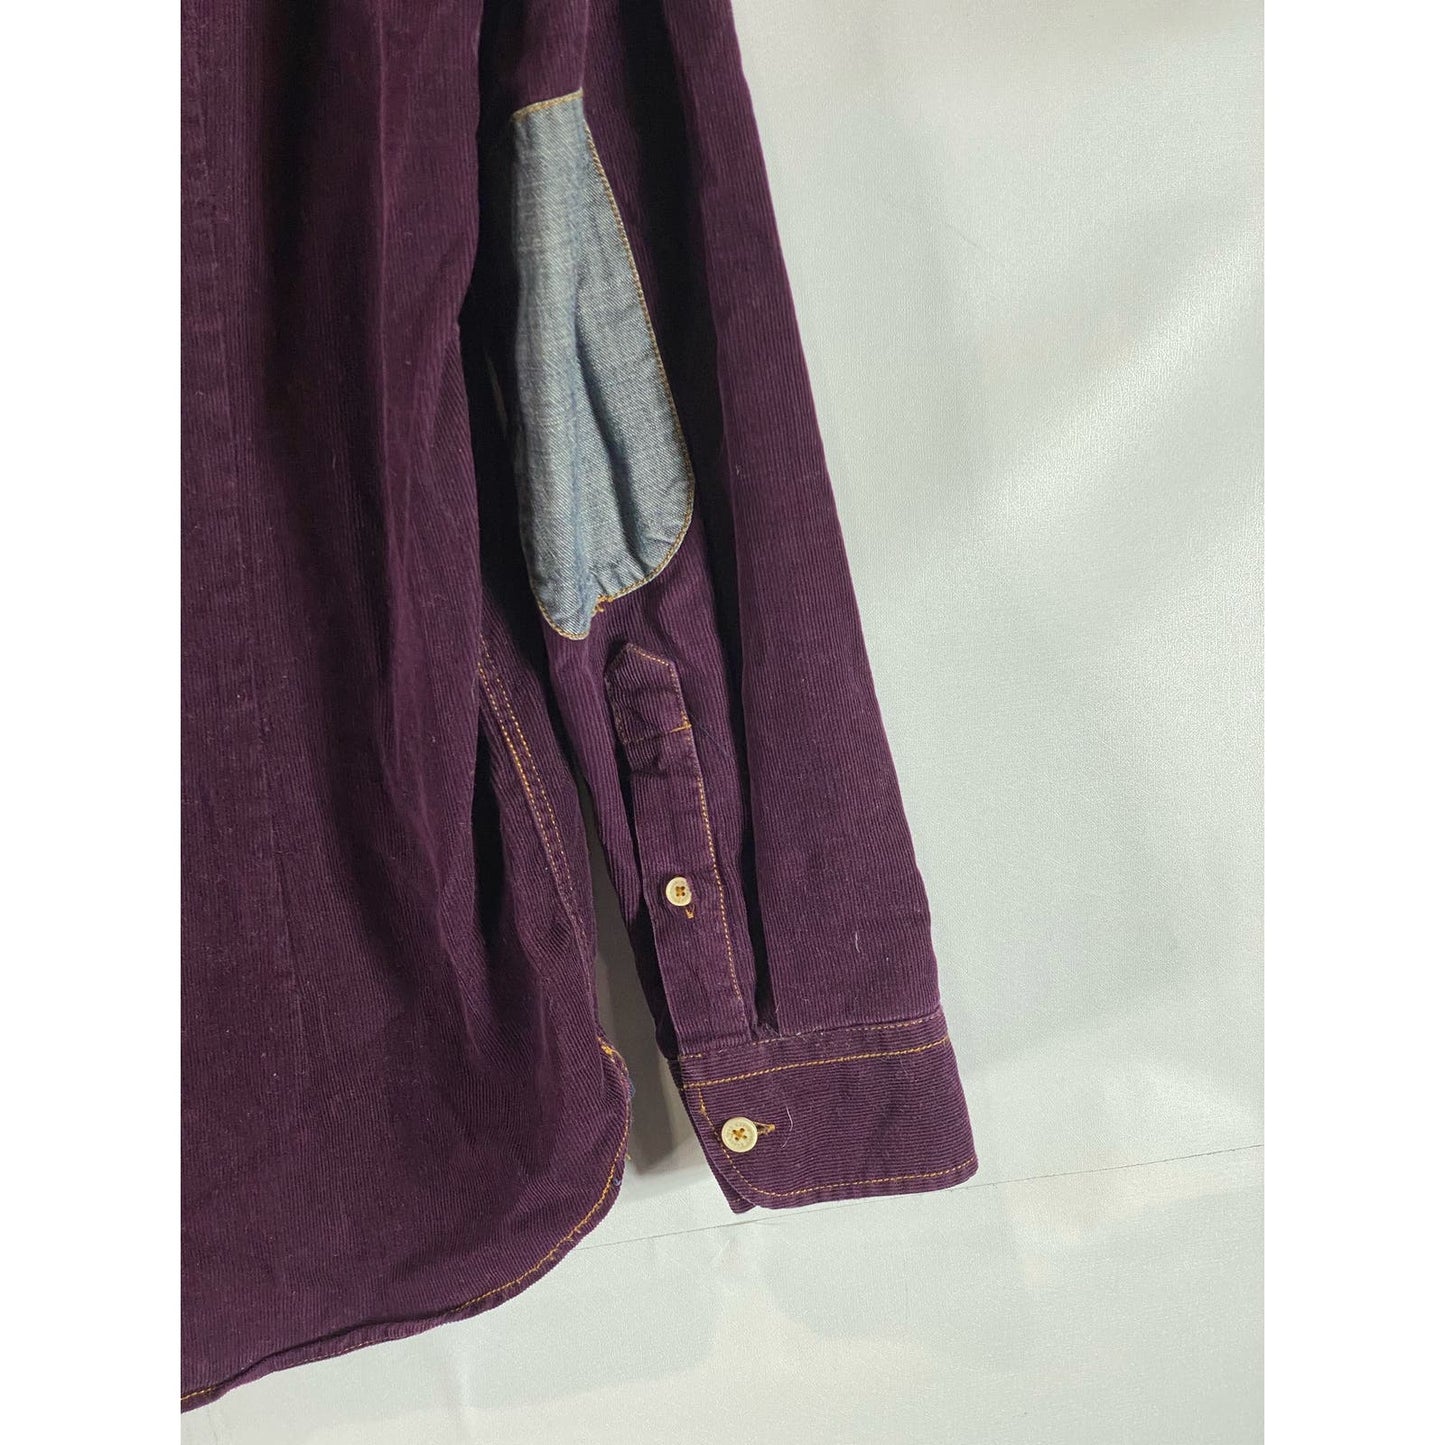 TED BAKER LONDON Men's Burgundy Corduroy Elbow-Patch Button-Up Shirt SZ 4(US/L)